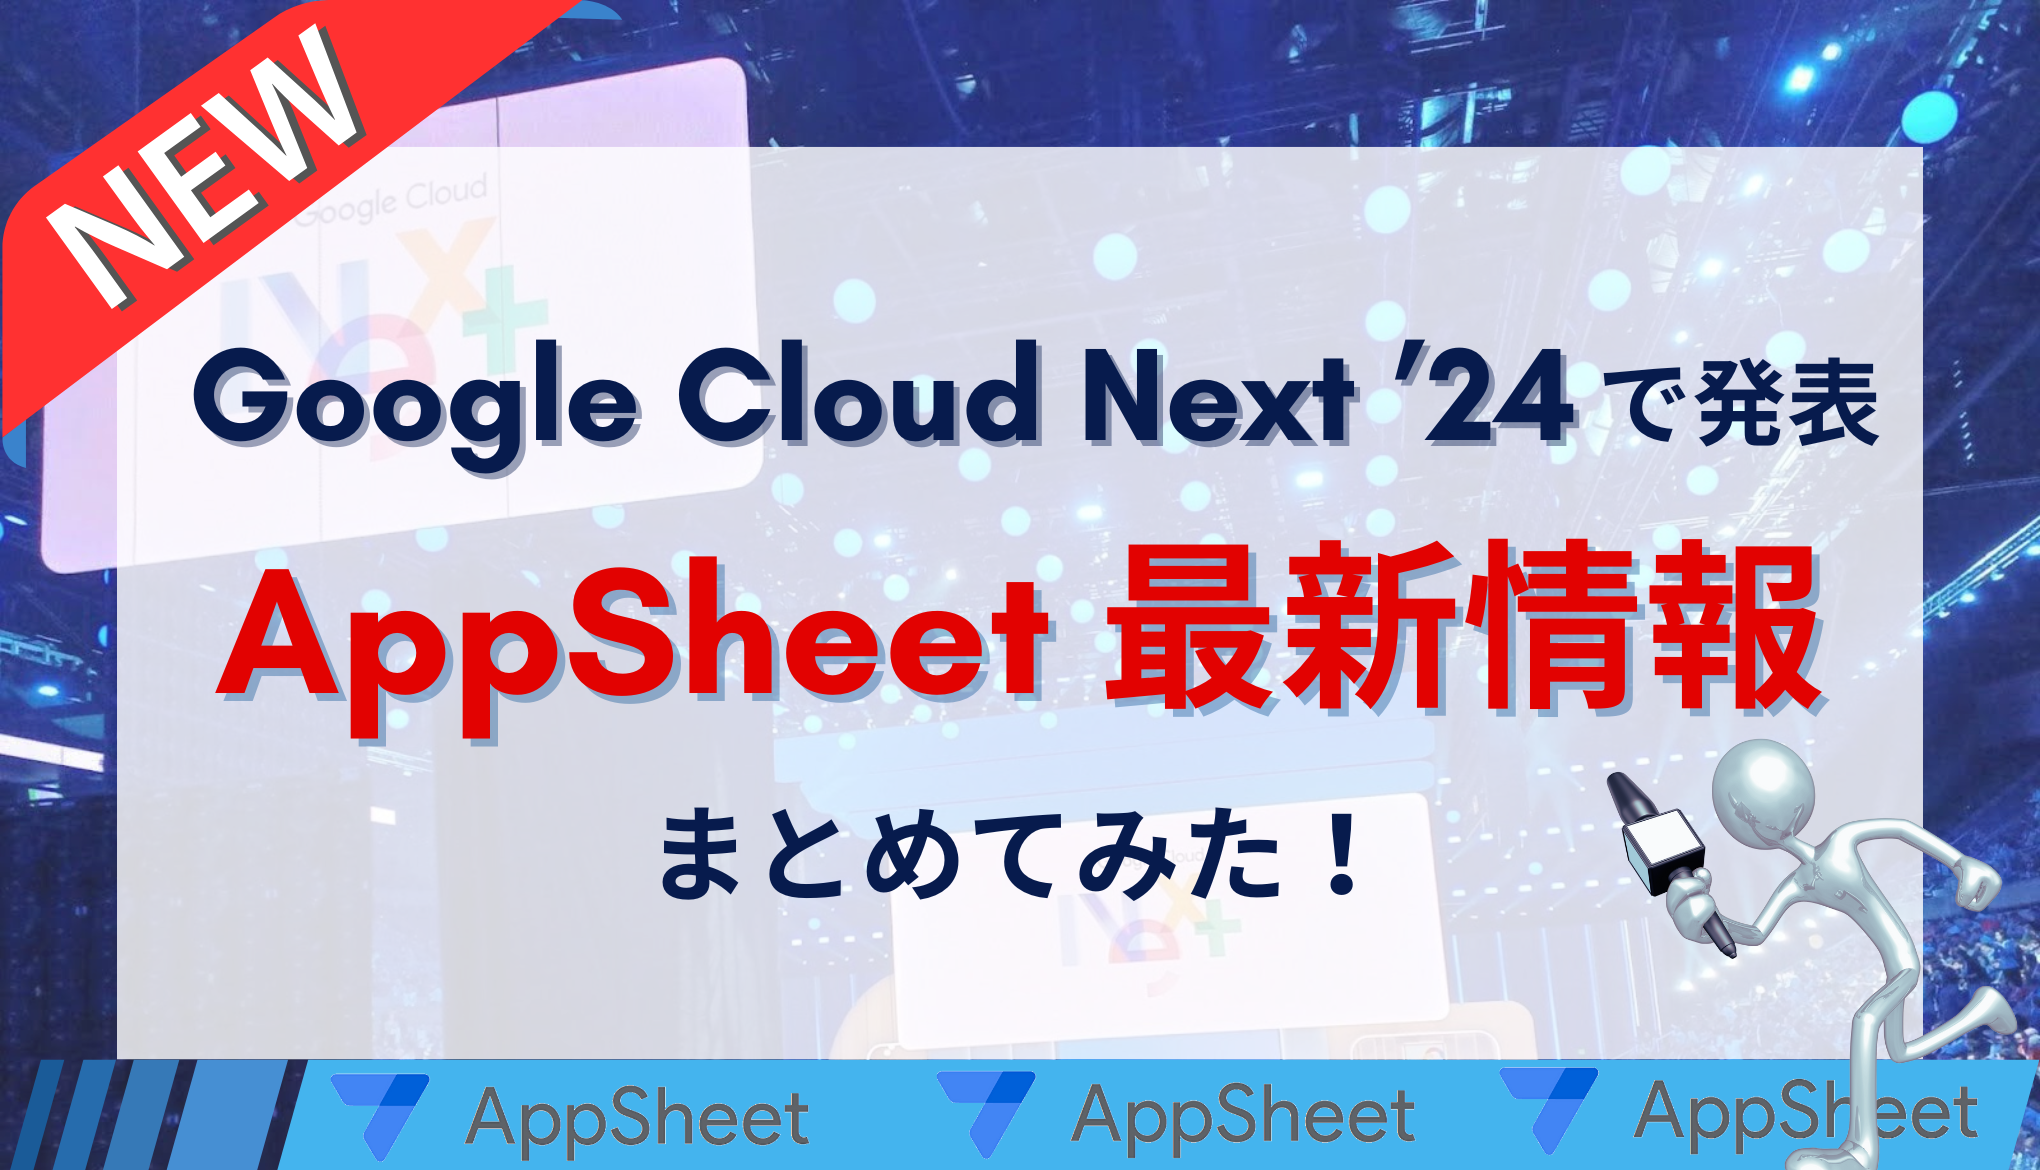 [ 最新情報 ] Google Cloud Next ’24 で発表された AppSheet 最新情報をまとめてみた！サムネイル画像